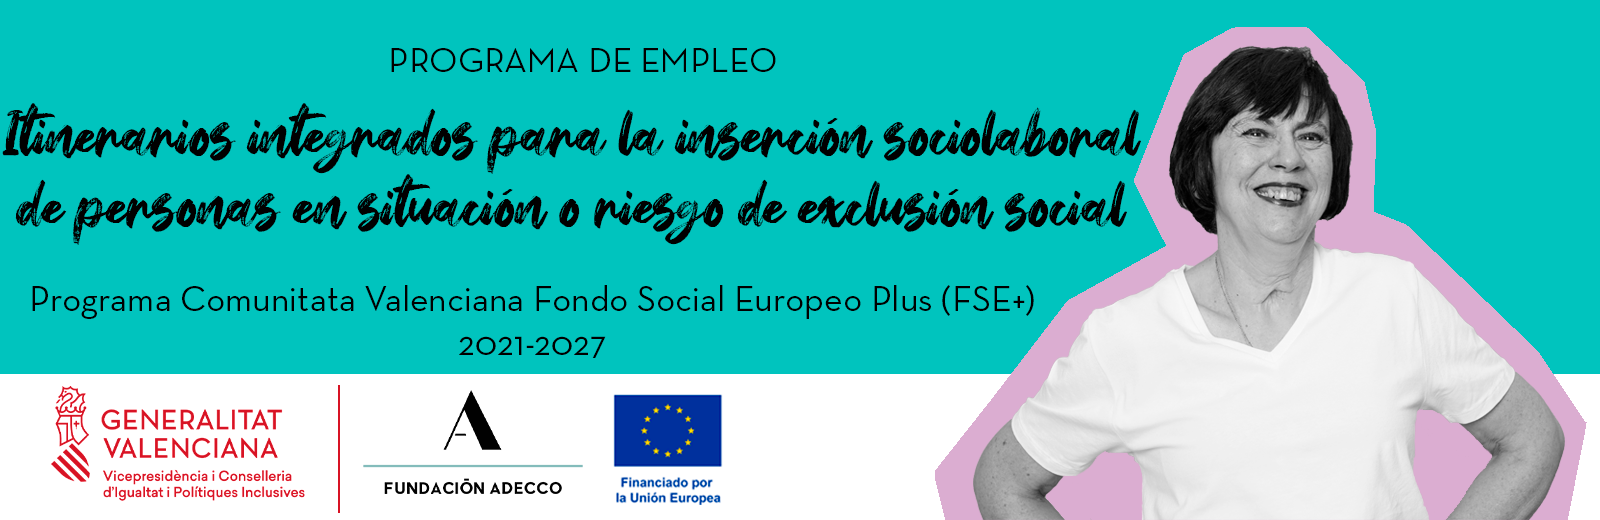 Programa empleo personas en situación e riesgo o exclusion social Comunitat Valenciana Fundación Adecco